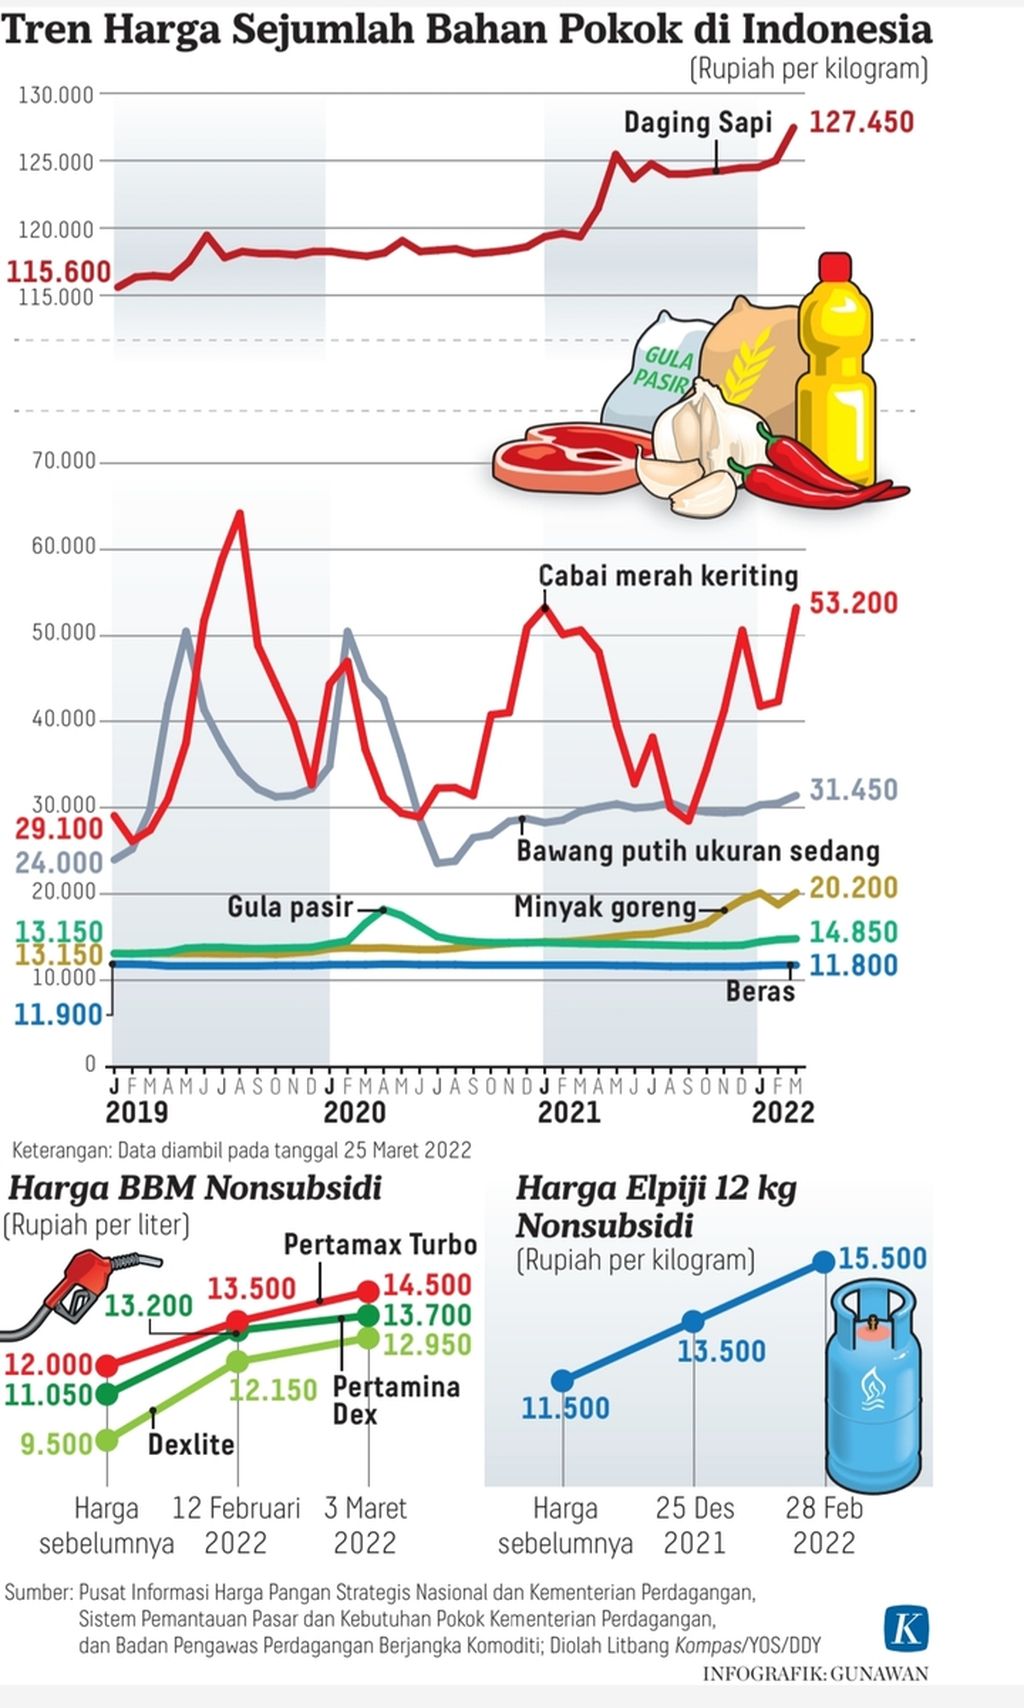 Infografik Tren Harga Sejumlah Bahan Pokok di Indonesia. Per 28 Februari 2022